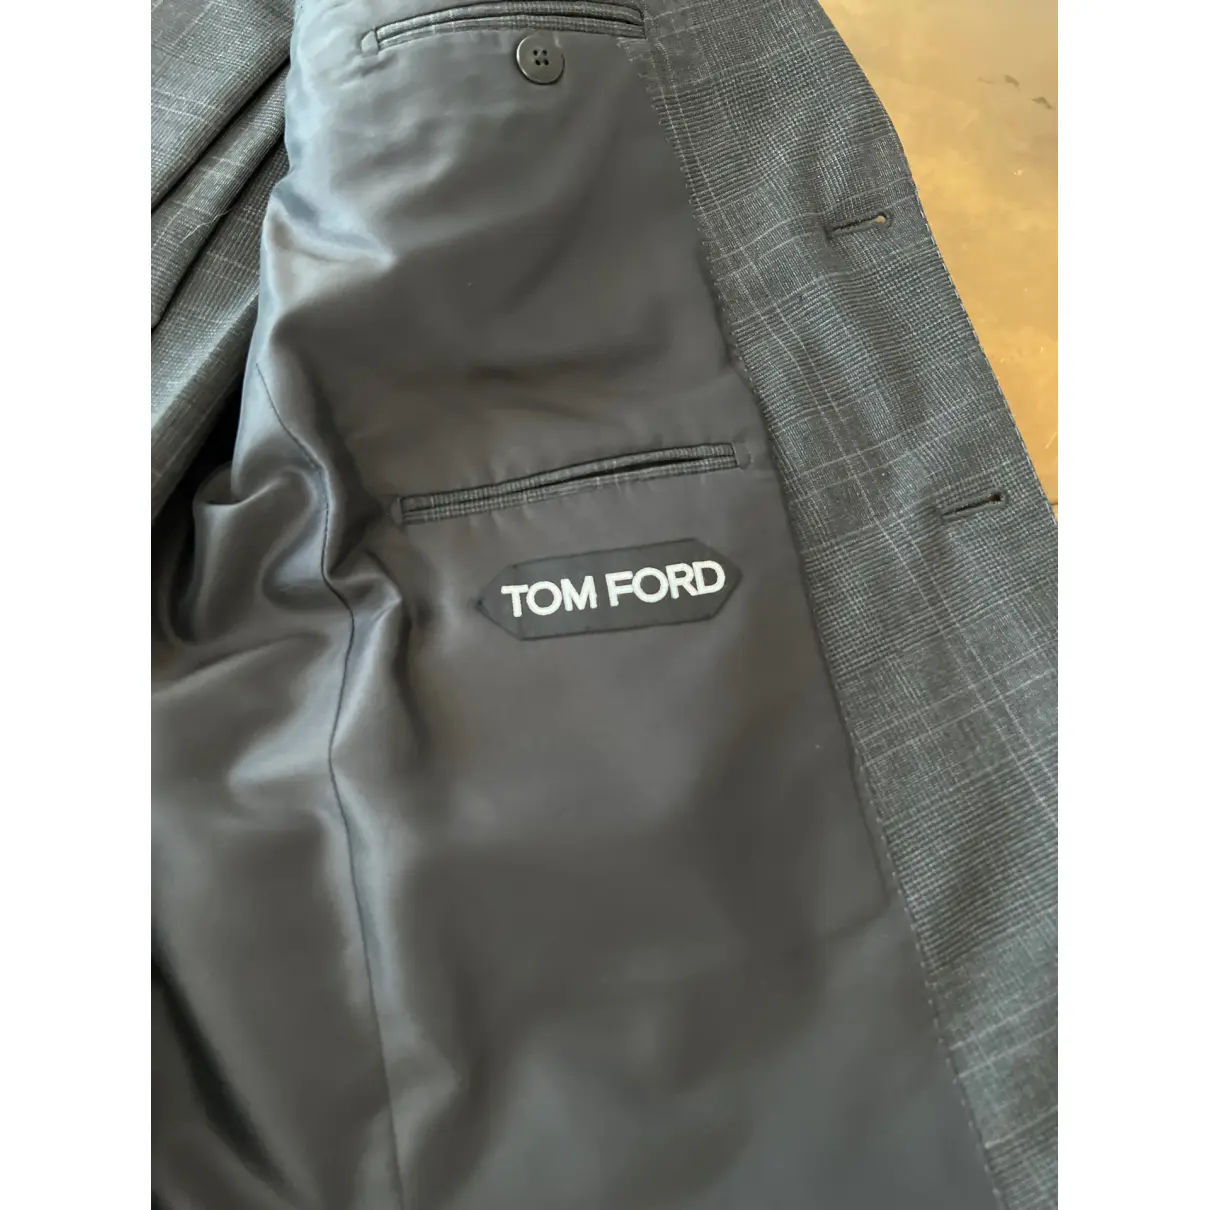 Buy Tom Ford Wool suit online